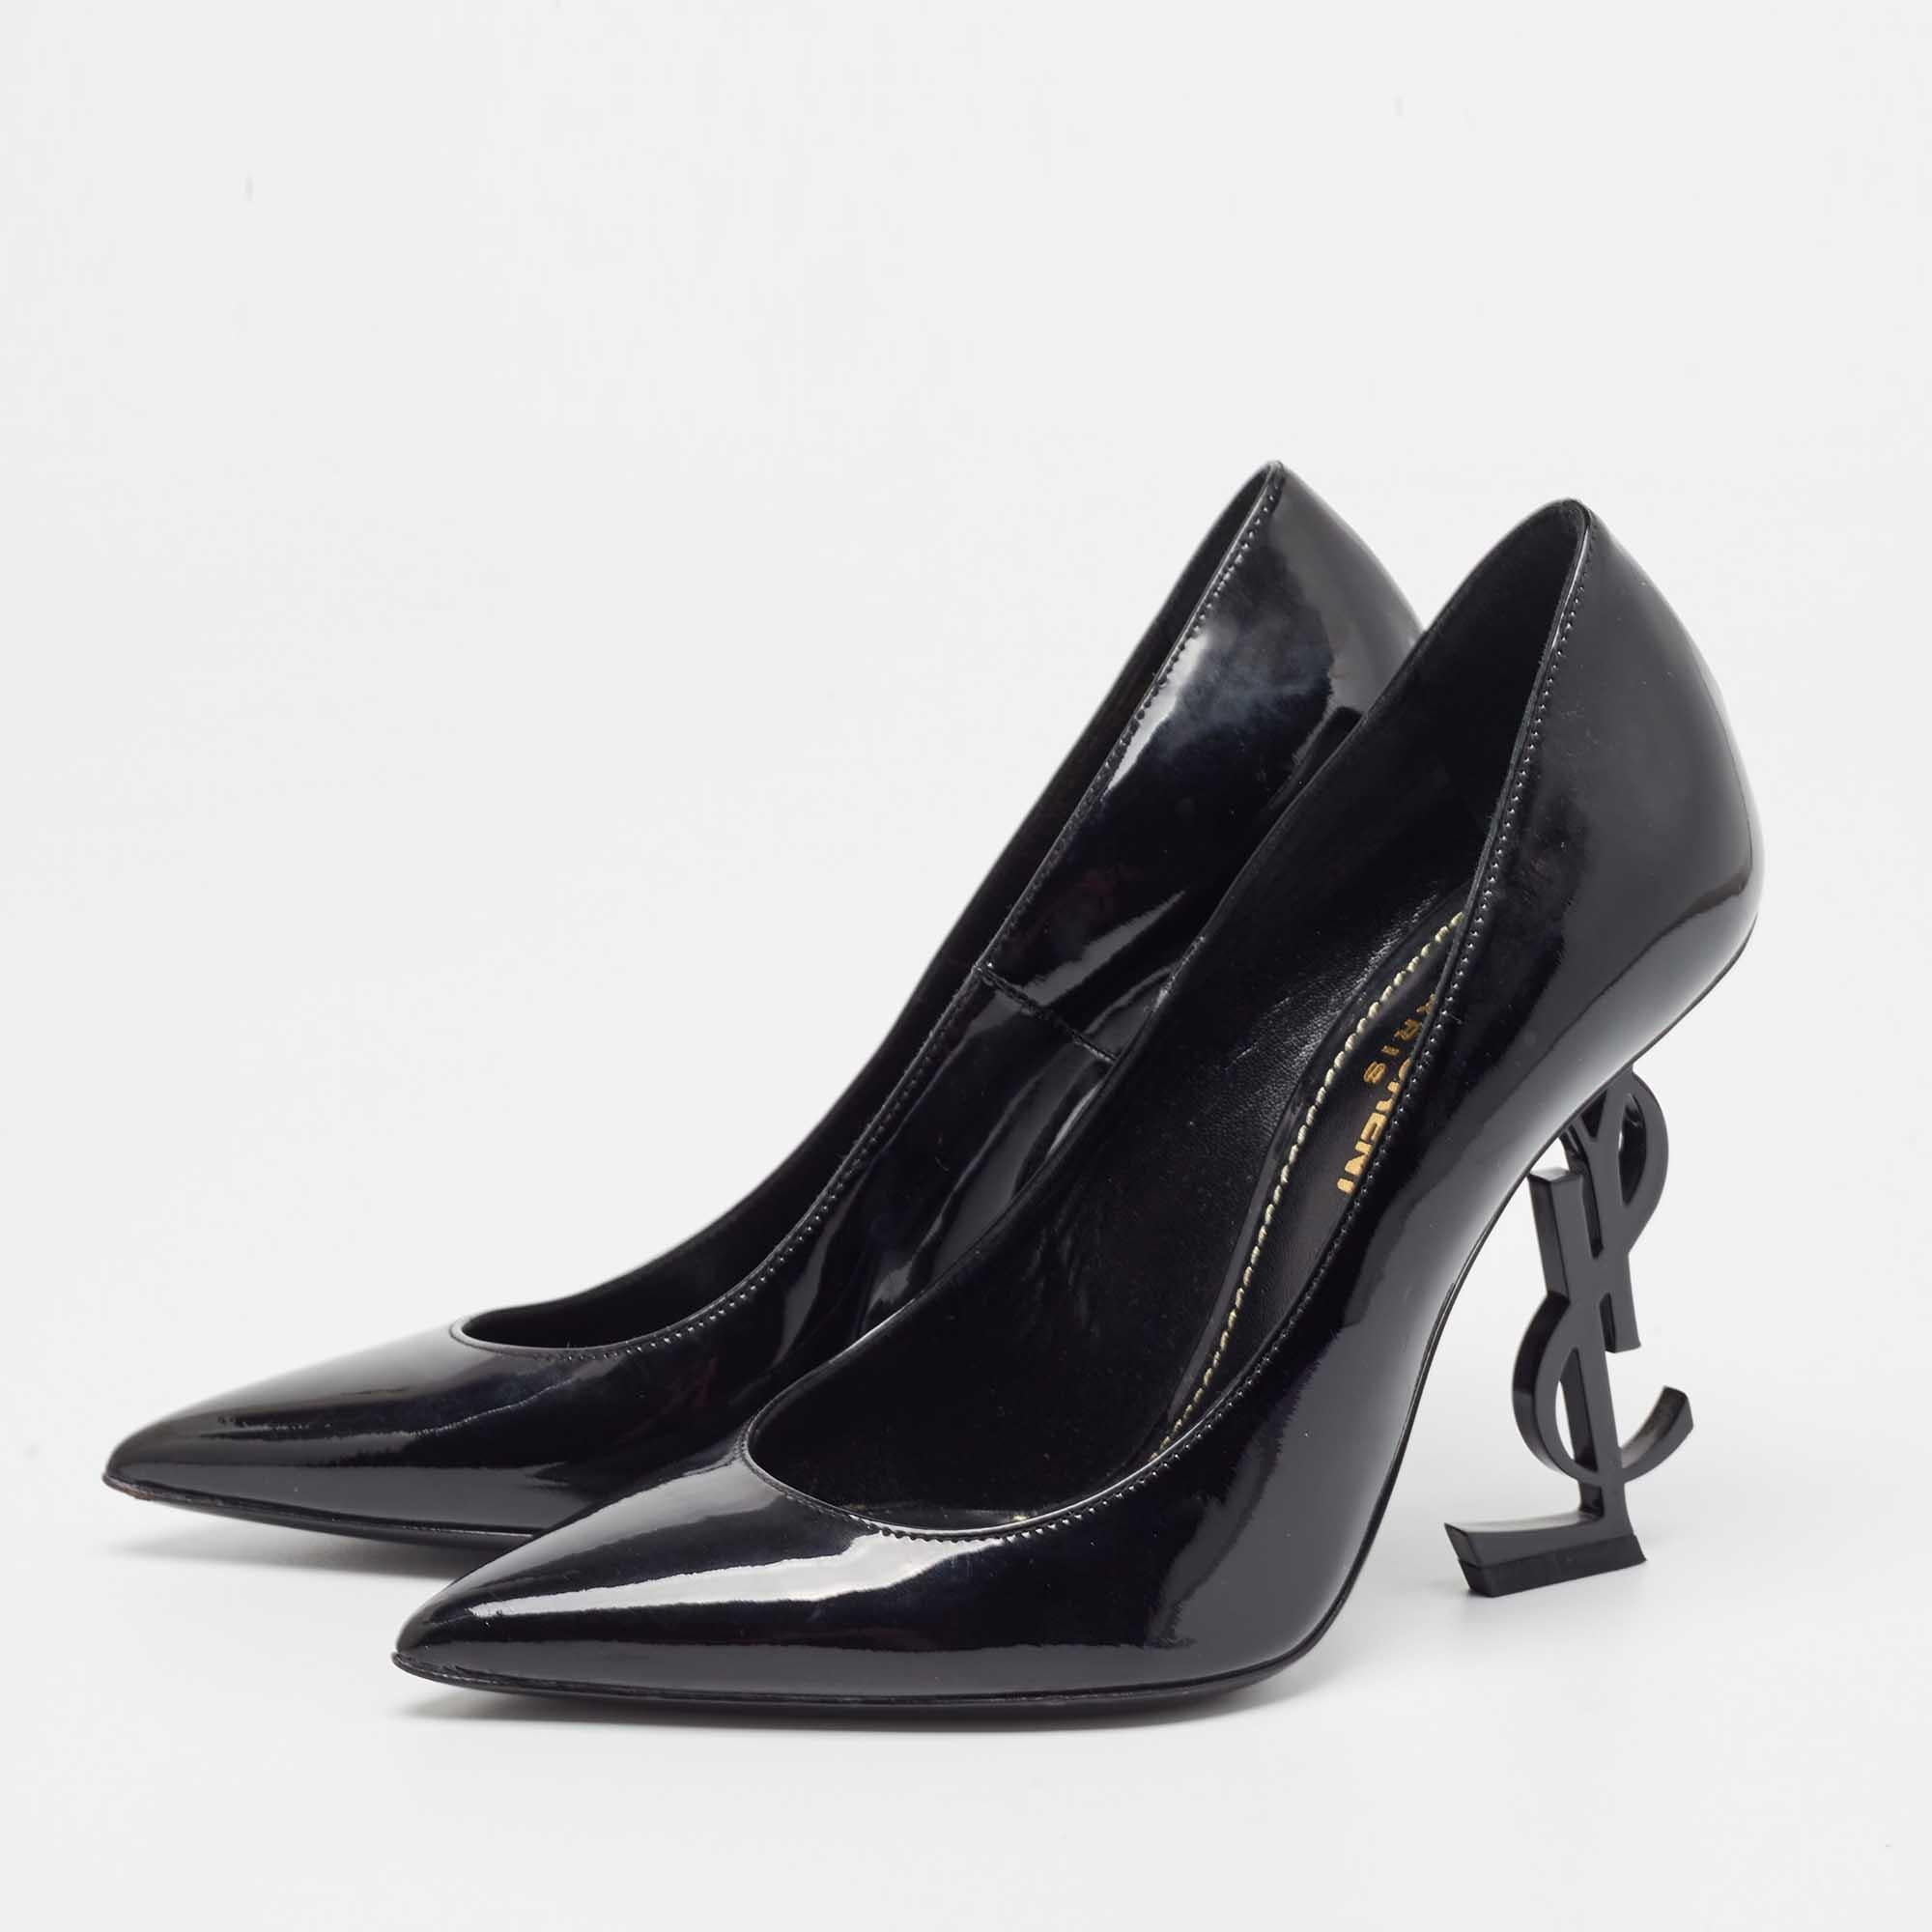 Men's Saint Laurent Black Patent Leather Opyum Pointed Toe Pumps Size 35